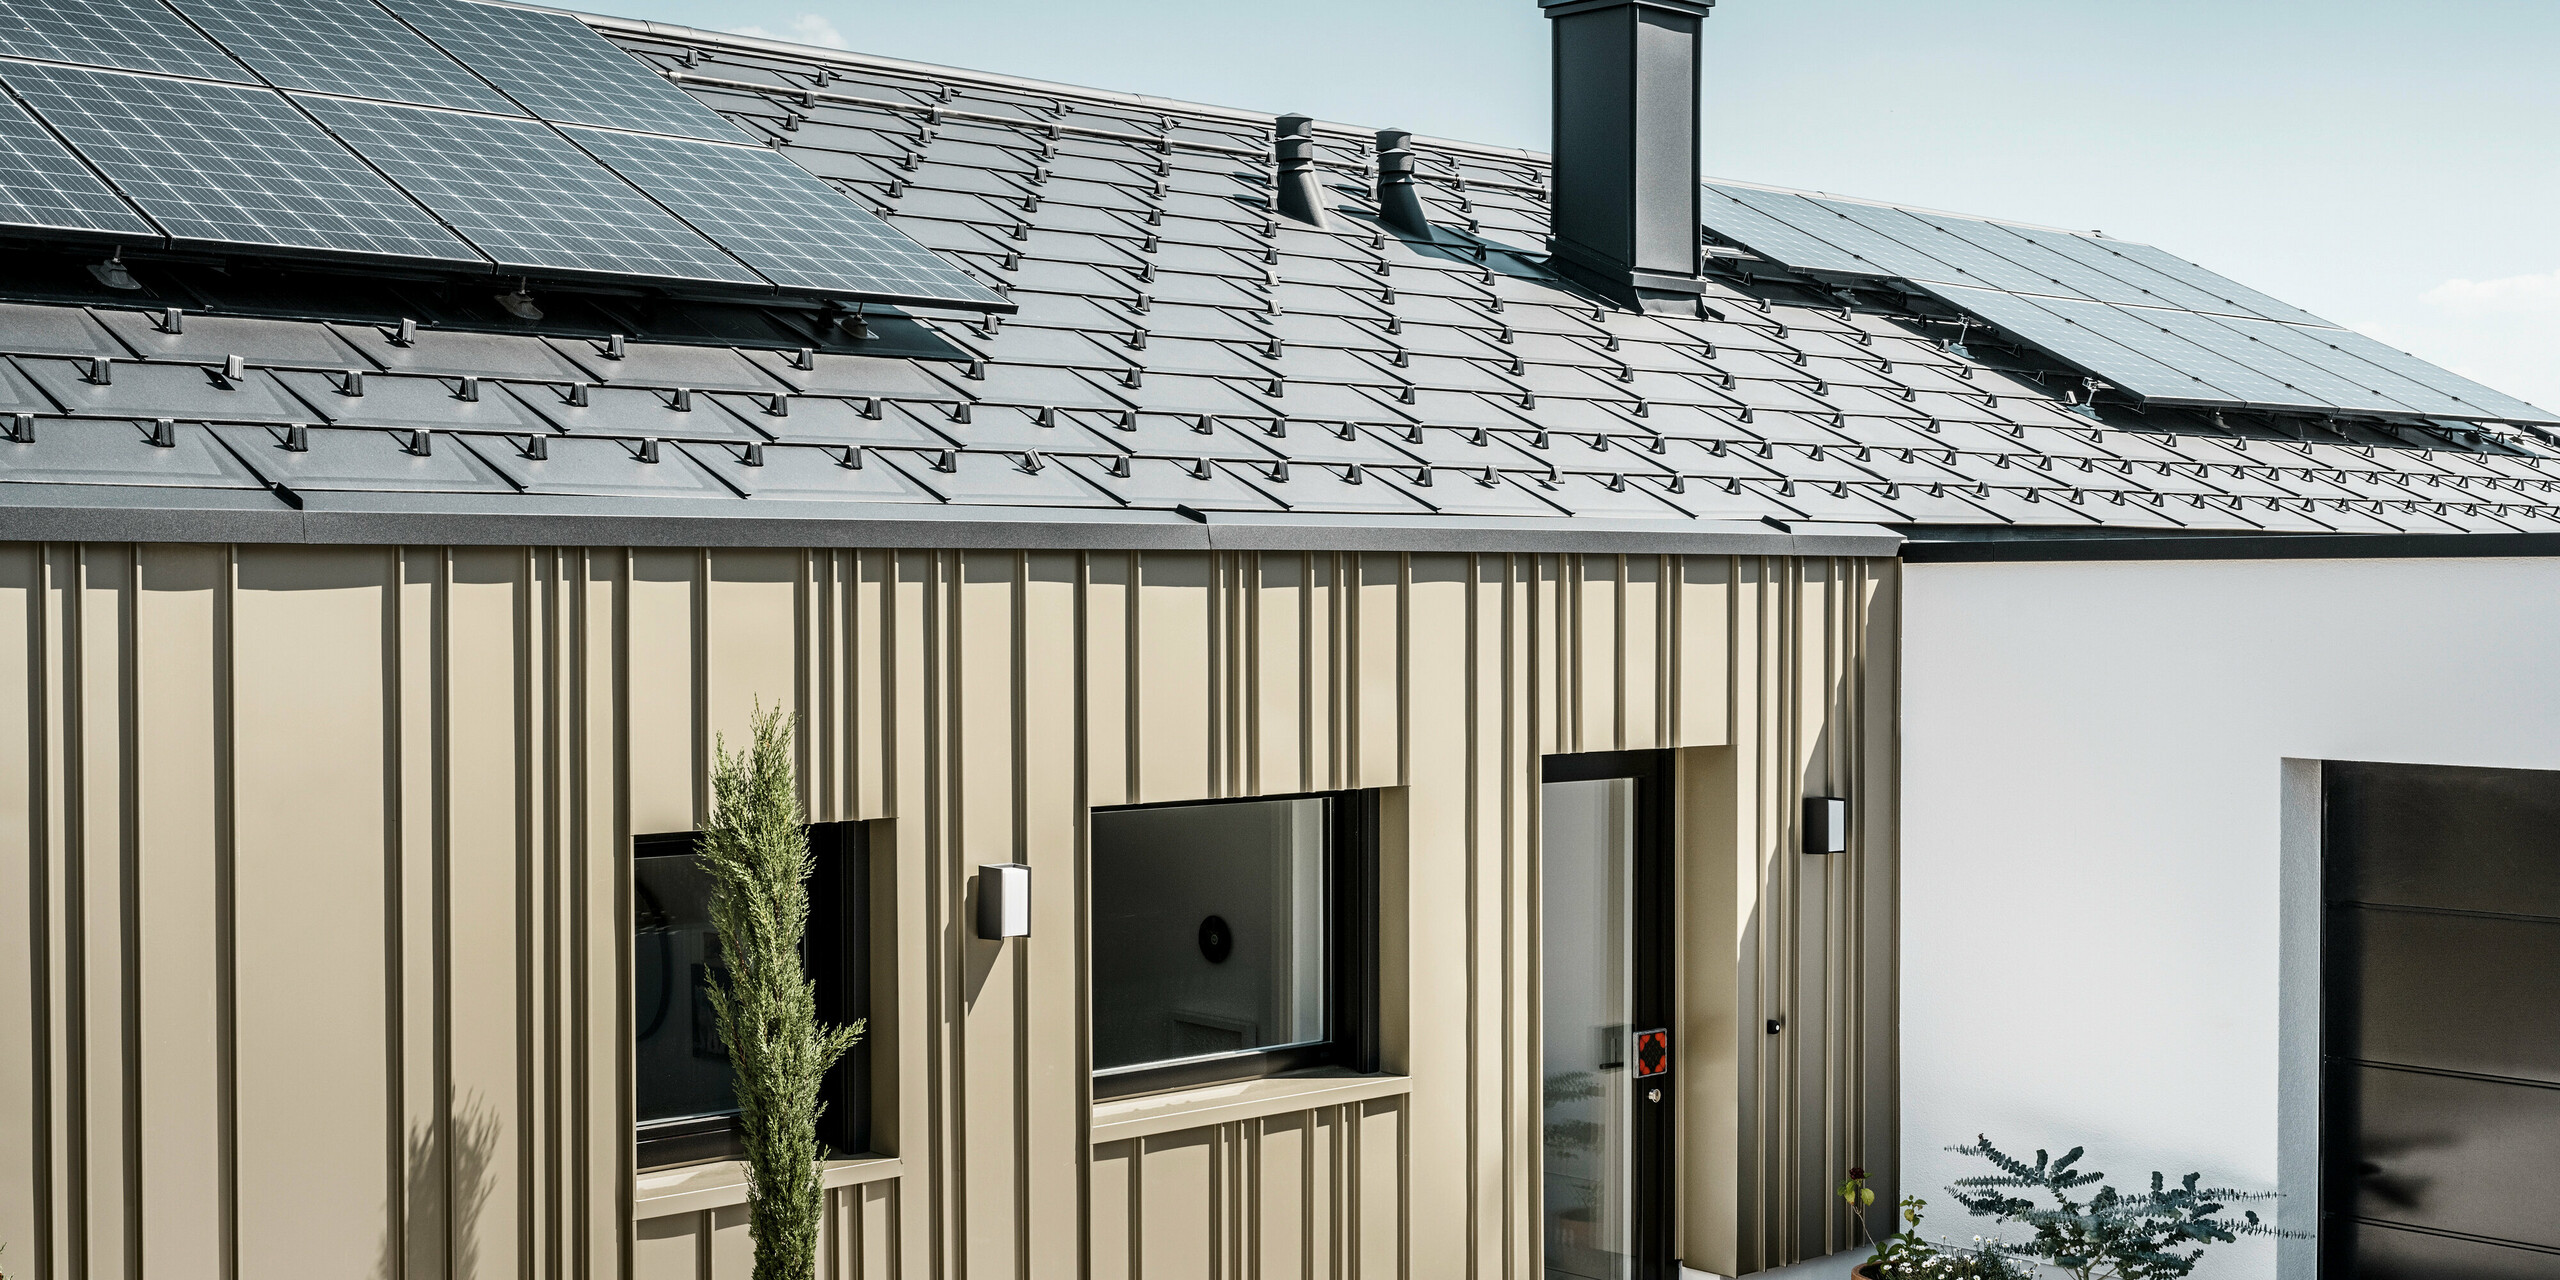 Ein Neubau in Bad Münstereifel wurde eingedeckt mit der PREFA Dachplatte R.16 in anthrazit. Auf dem Dach befindet sich eine Photovoltaik-Anlage. Die Winkelfalzfassade besteht aus Falzonal in lichtbronze.